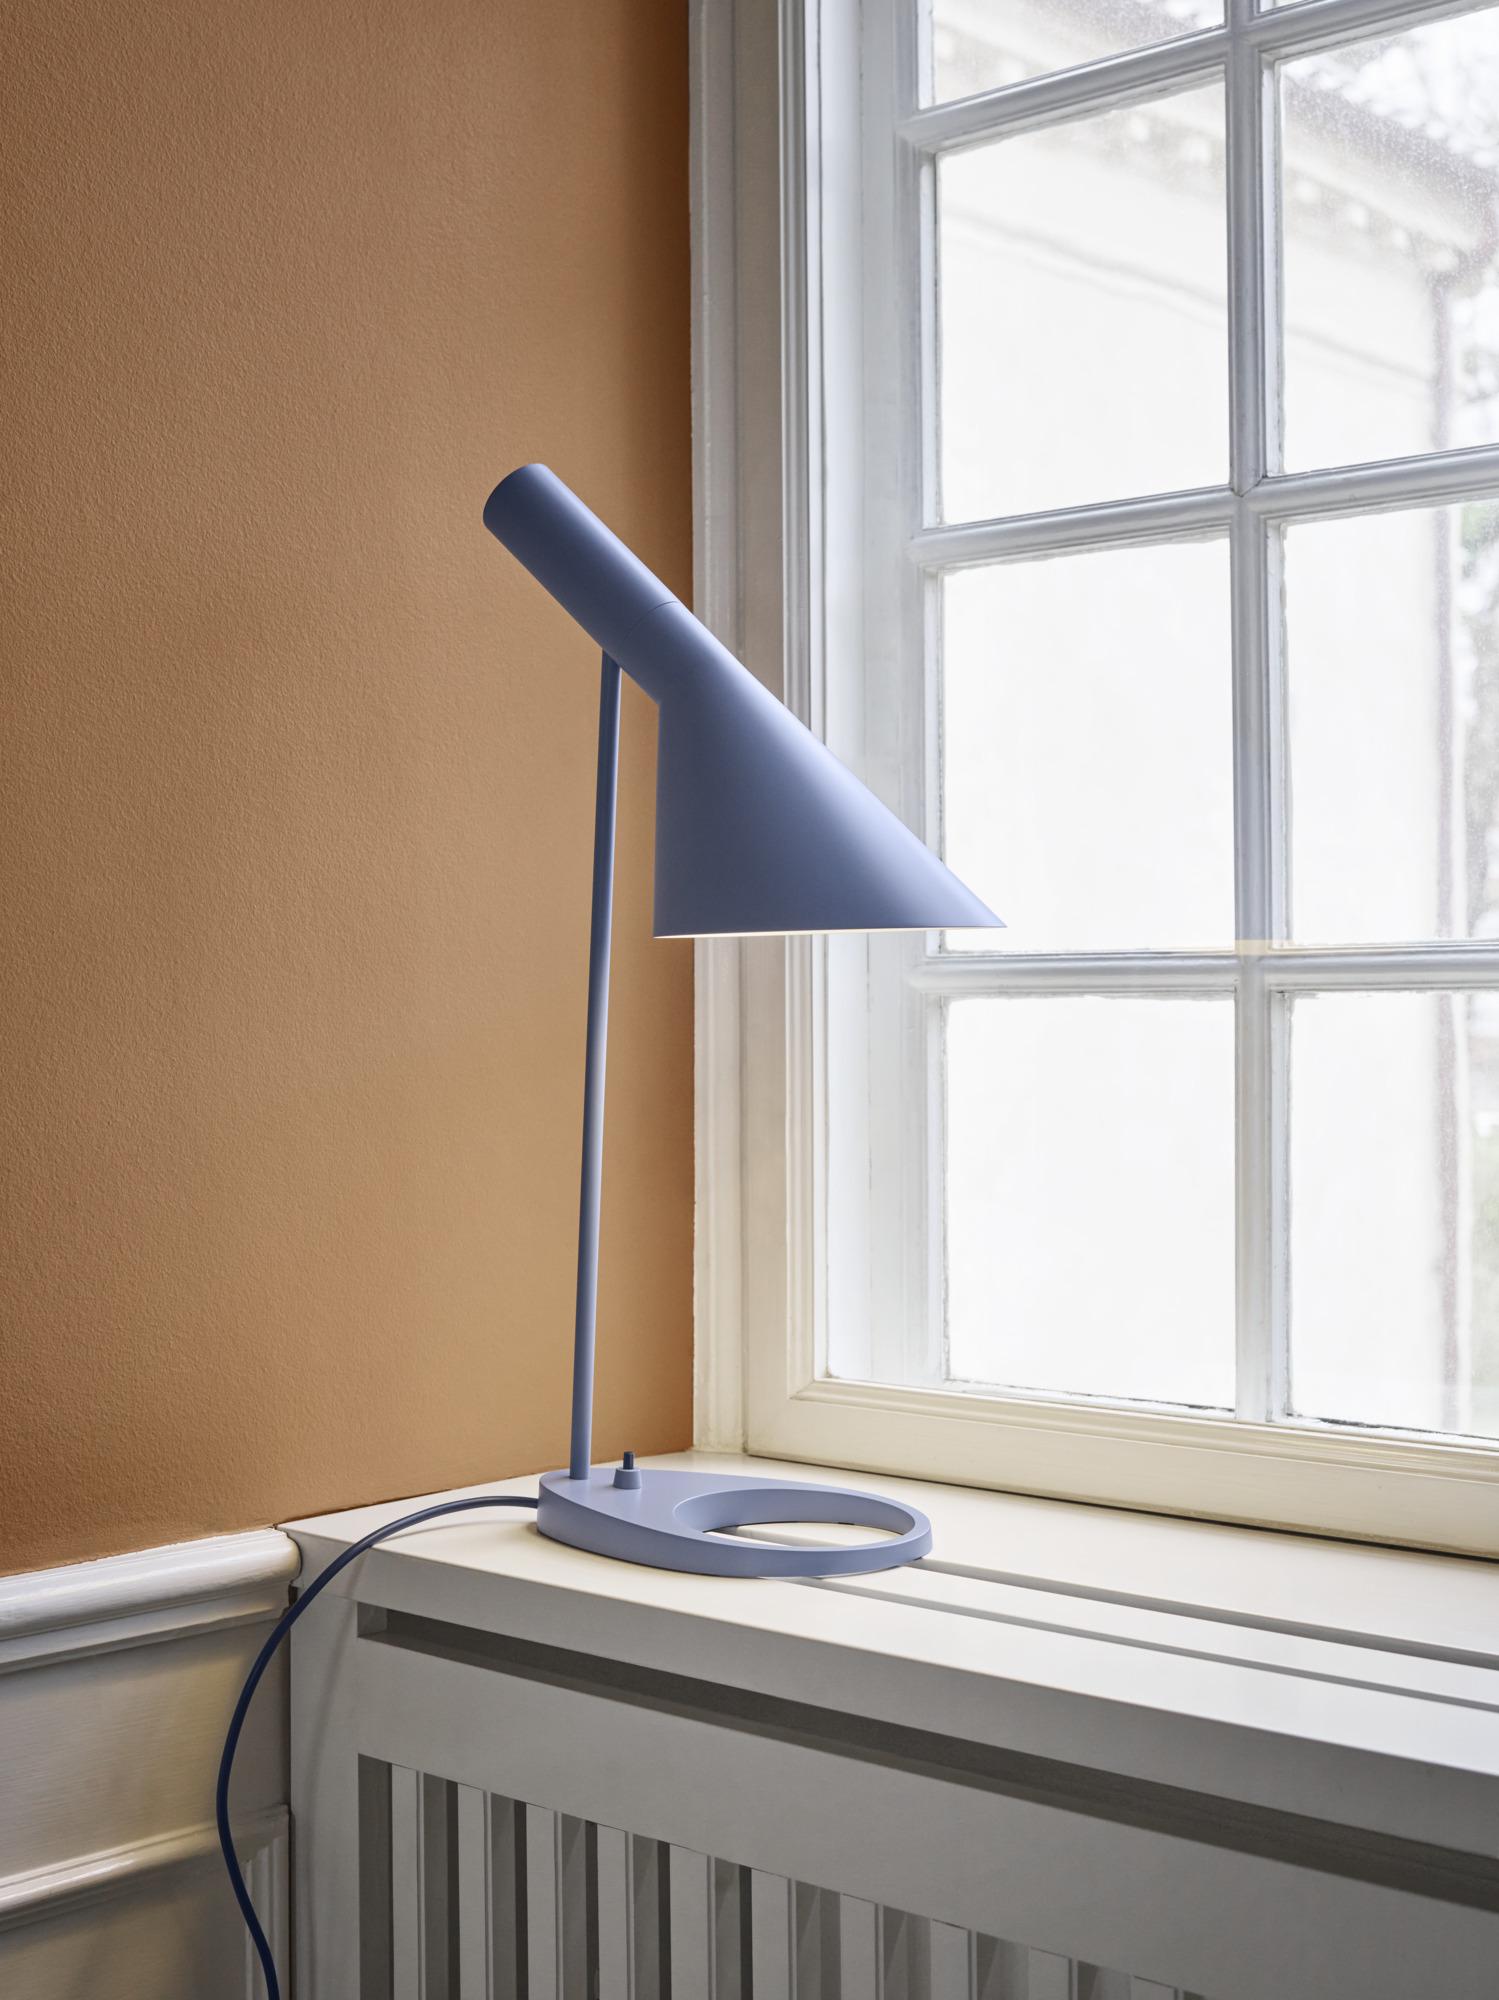 Lampe de table AJ d'Arne Jacobsen en bleu poussière pour Louis Poulsen. 

La série AJ faisait partie de la collection de luminaires que le célèbre designer danois Arne Jacobsen a créée pour le premier hôtel SAS Royal en 1957. Aujourd'hui, ses